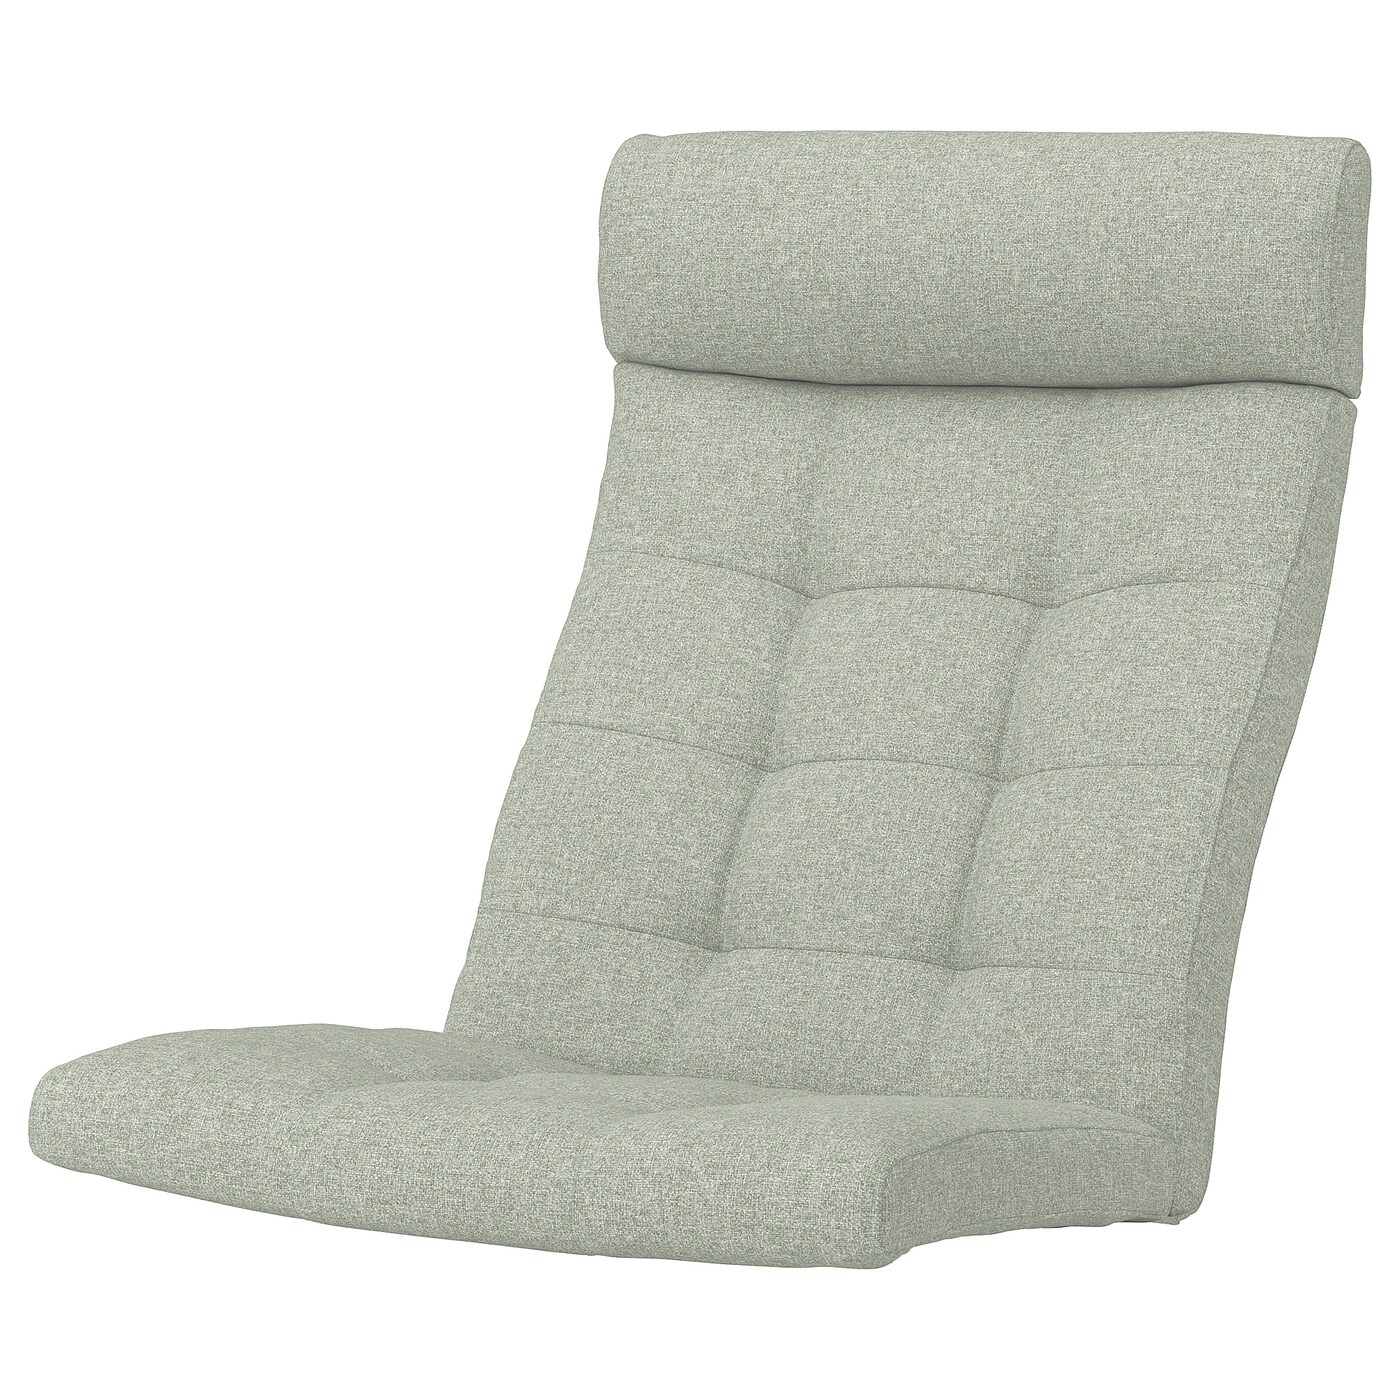 Подушка на кресло - POÄNG /POANG IKEA /  ПОЭНГ ИКЕА,  137х55 см, зеленый